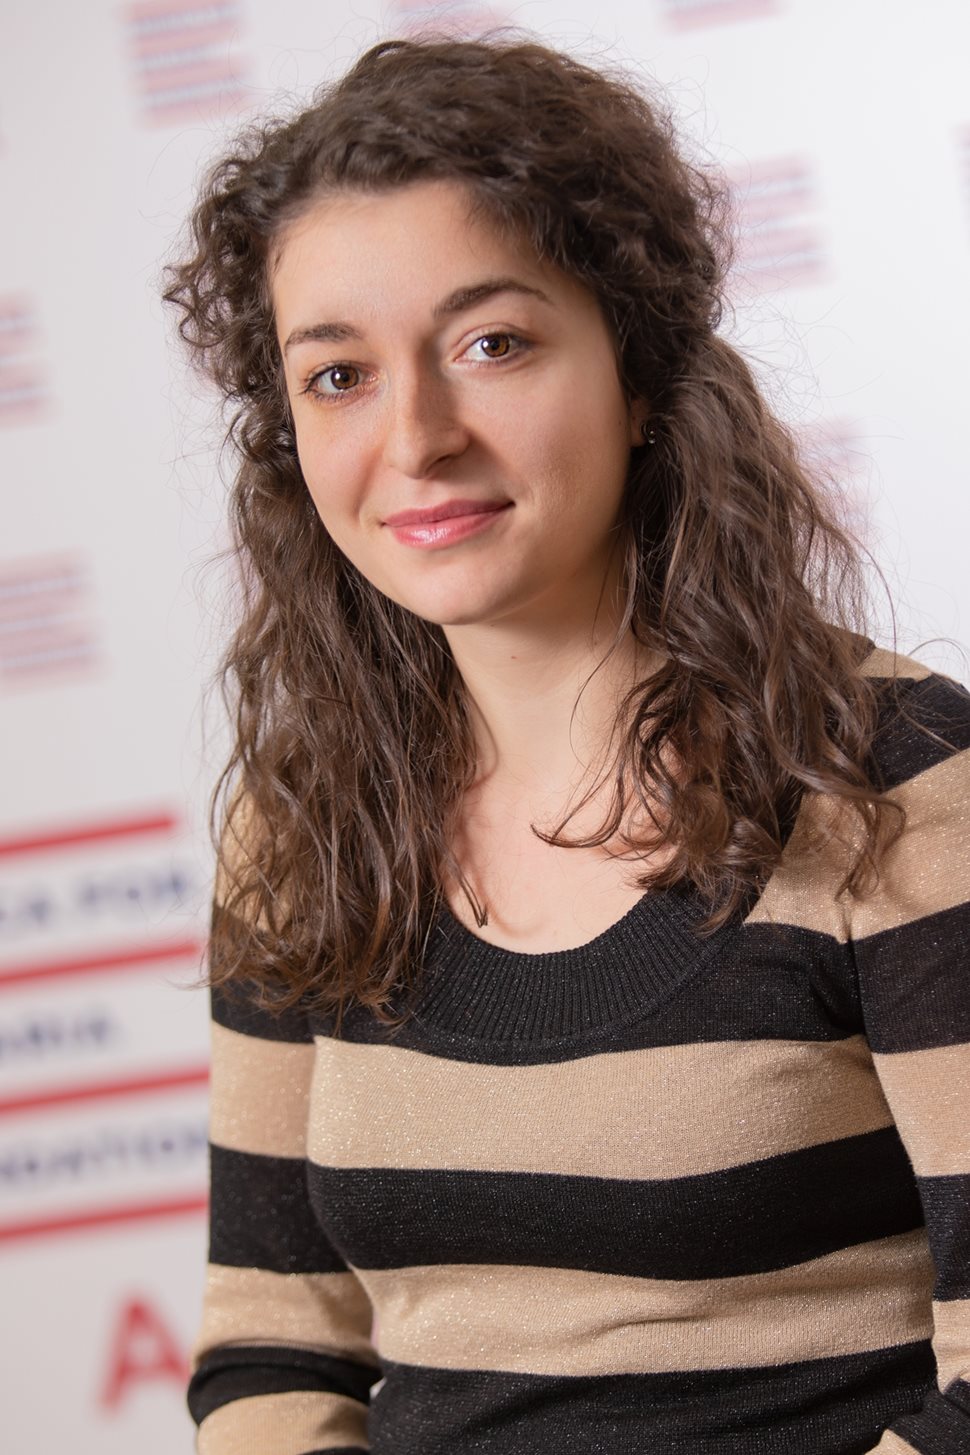 Диана Трифонова има бакалавърска степен по журналистика от Софийския университет и завършва магистърската програма “Е-Европа” в същото учебно заведение. Тя е част от екипа на Фондация “Америка за България” от 2015 г.